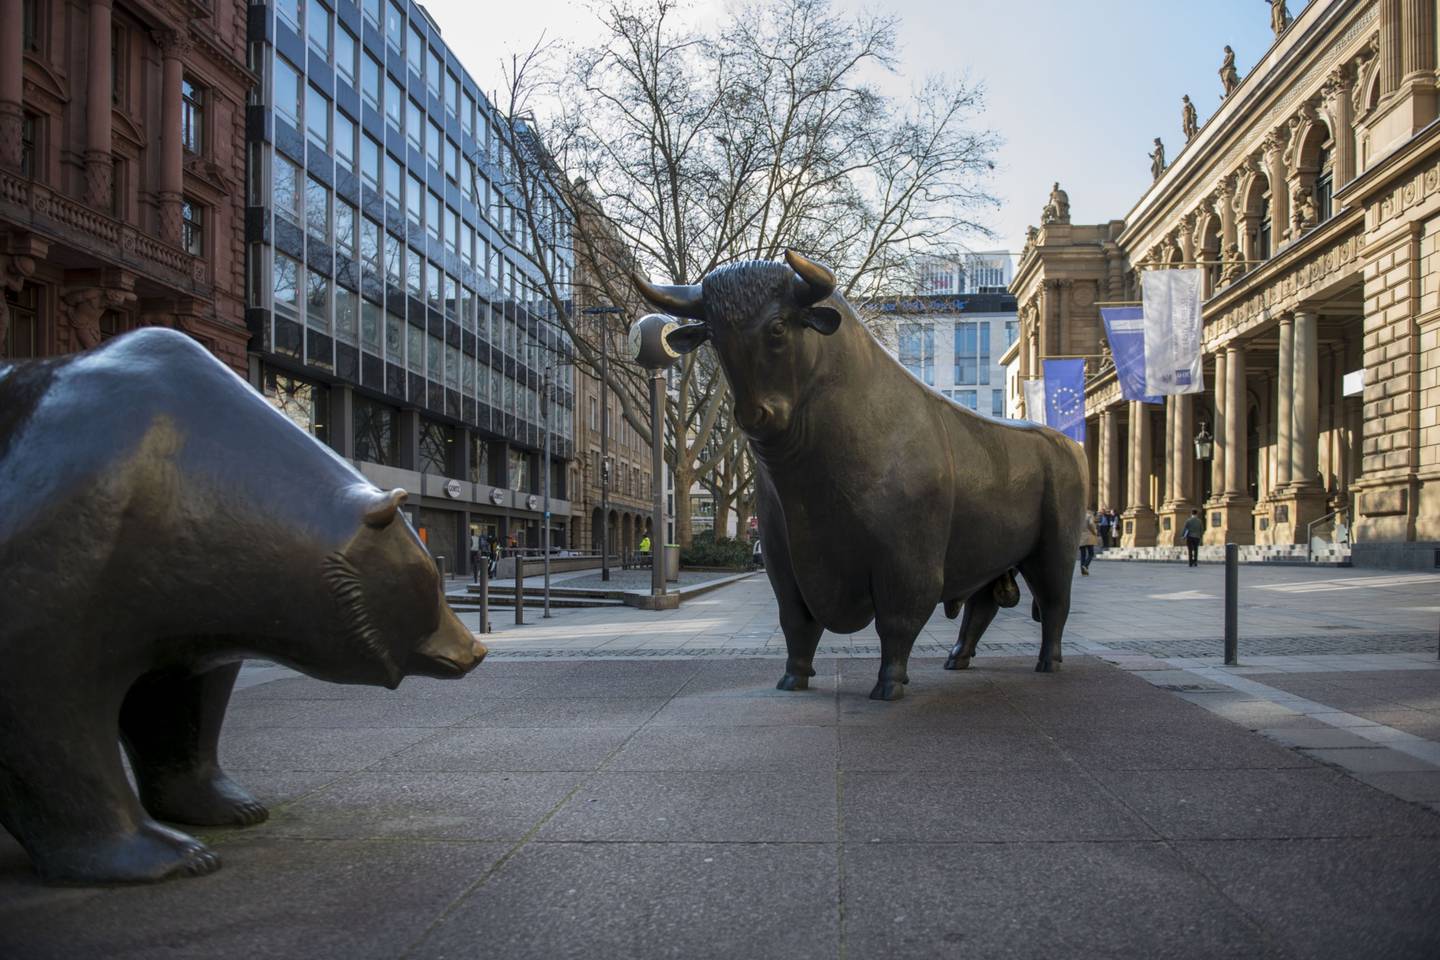 O bear market representa o mercado acionário em baixa, em oposição ao bull market, que simboliza bolsas em alta